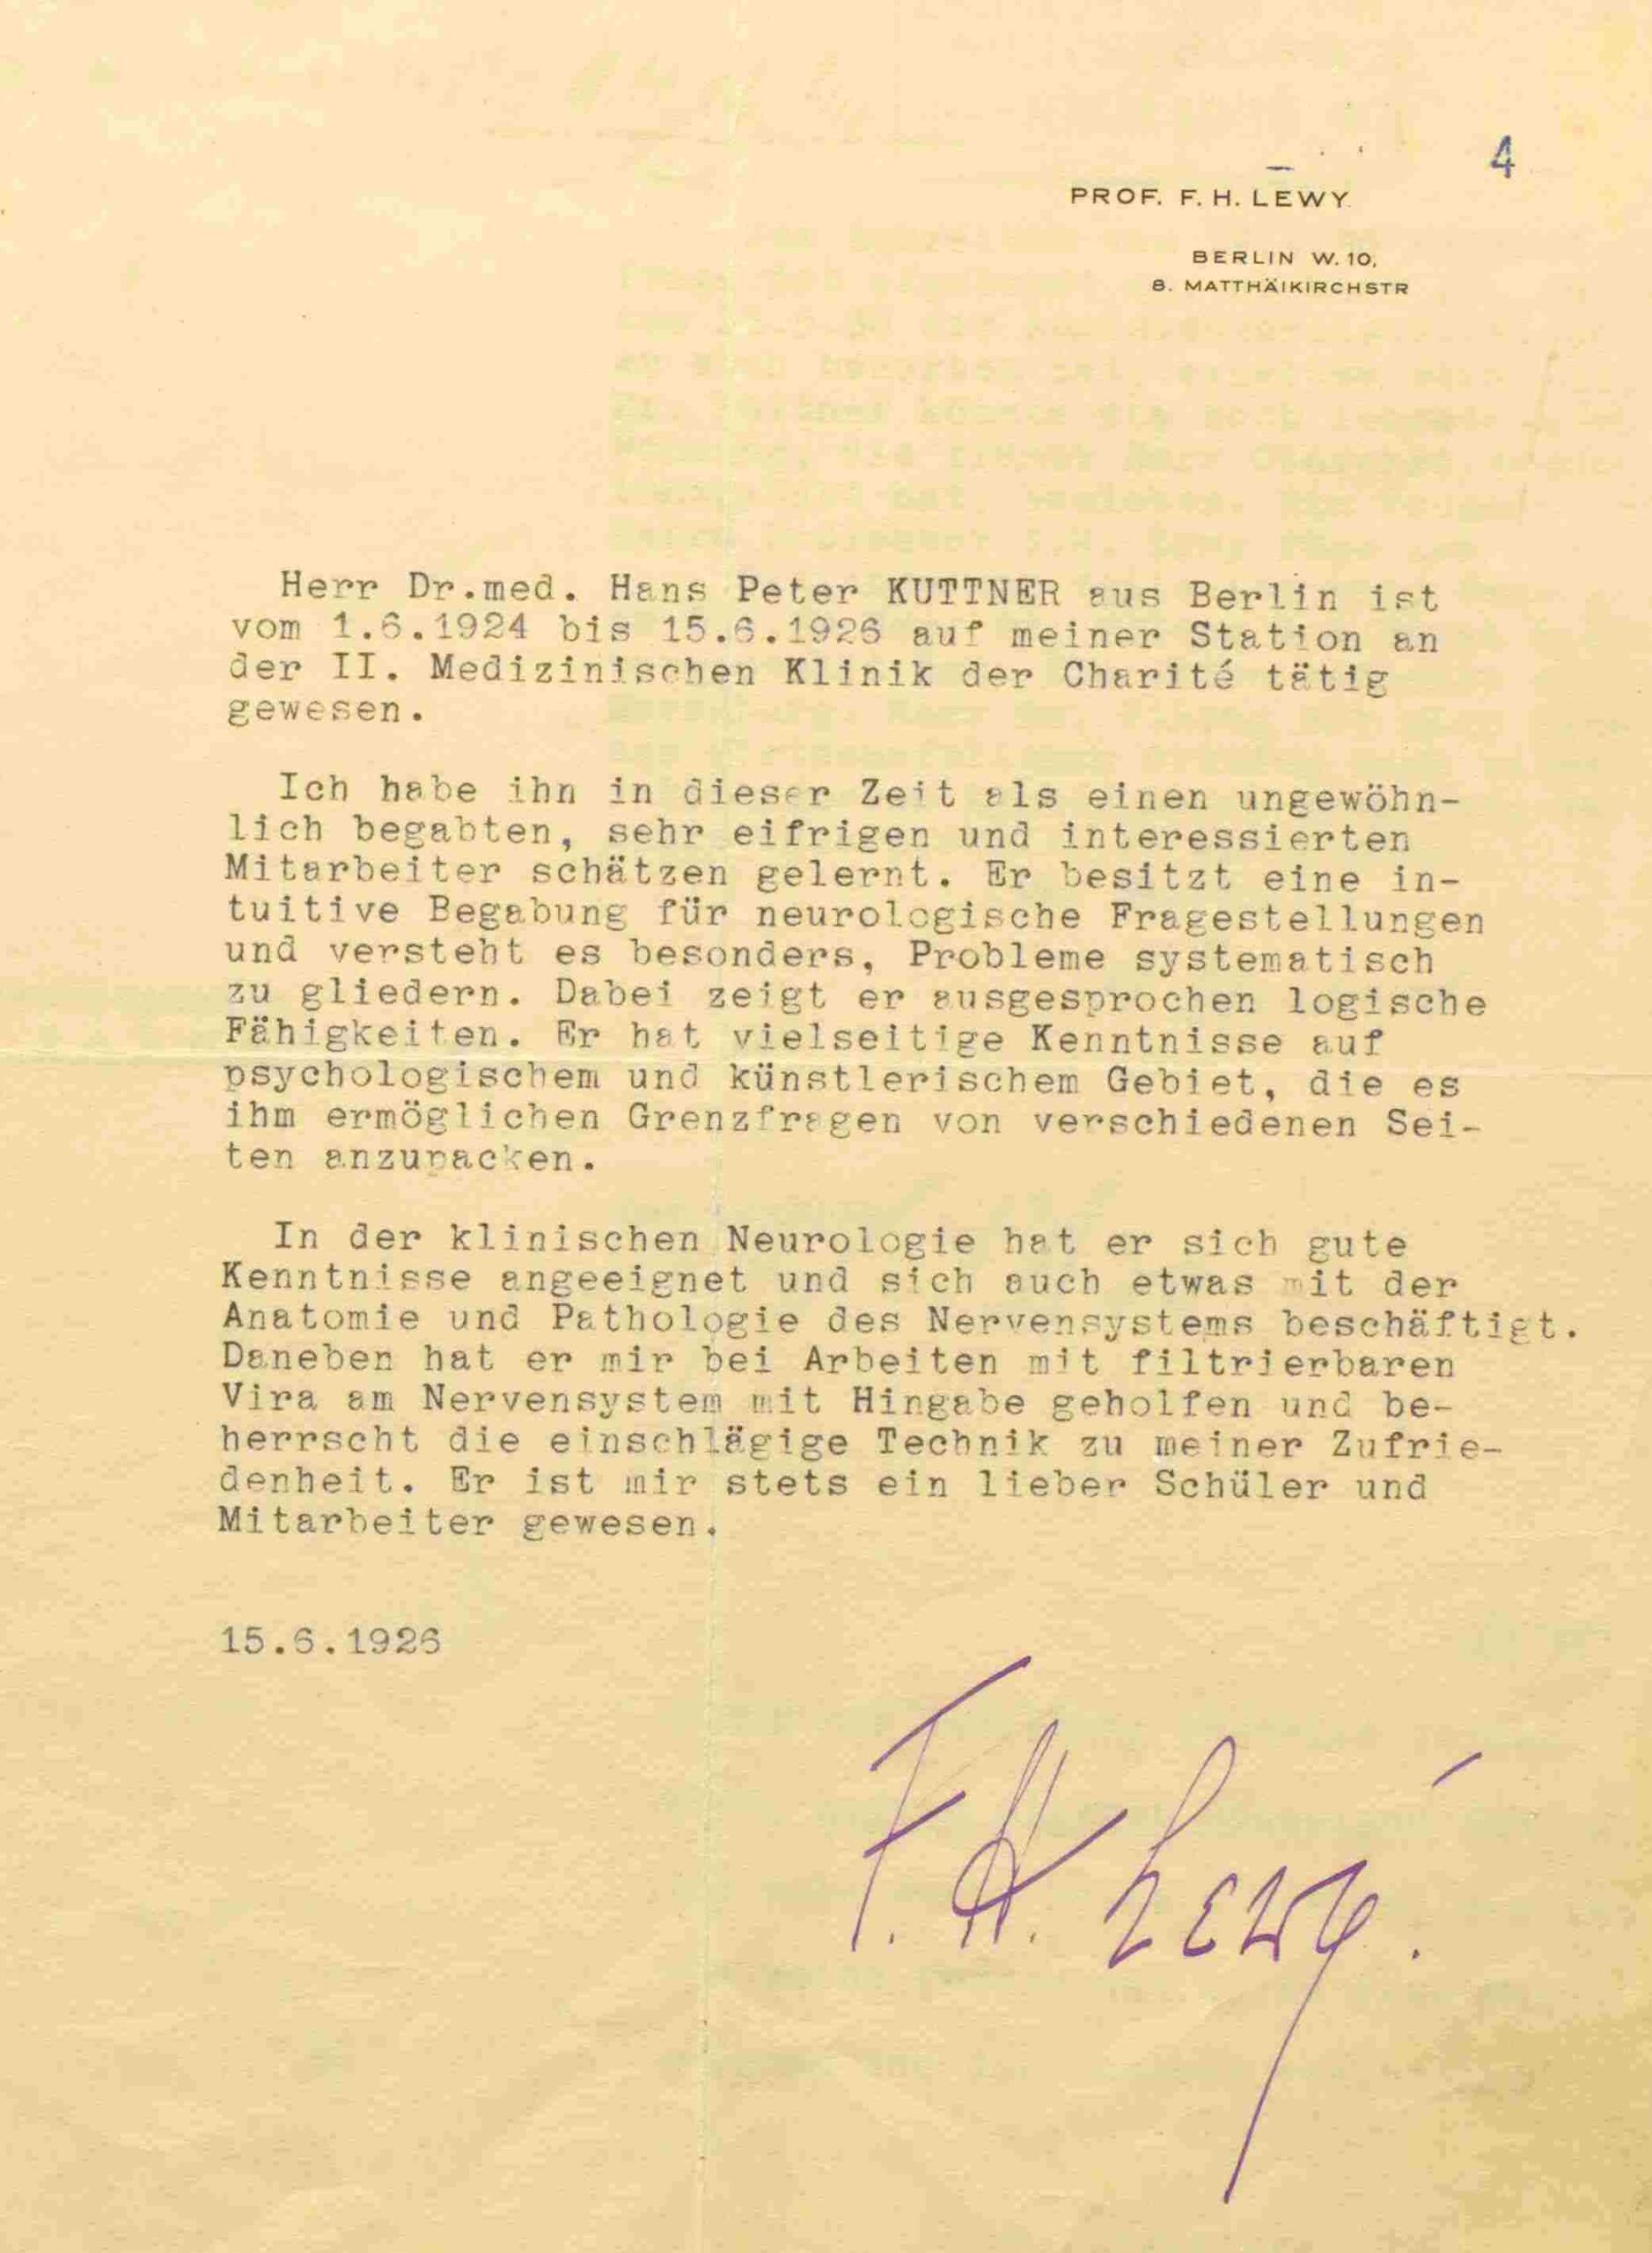 Empfehlungsschreiben für H.-P. Kuttner von Fritz Lewy, 1925, Landesarchiv Sachsen-Anhalt Sign. C 92 Nr. 5927, Personalakte H.-P. Kuttner, 